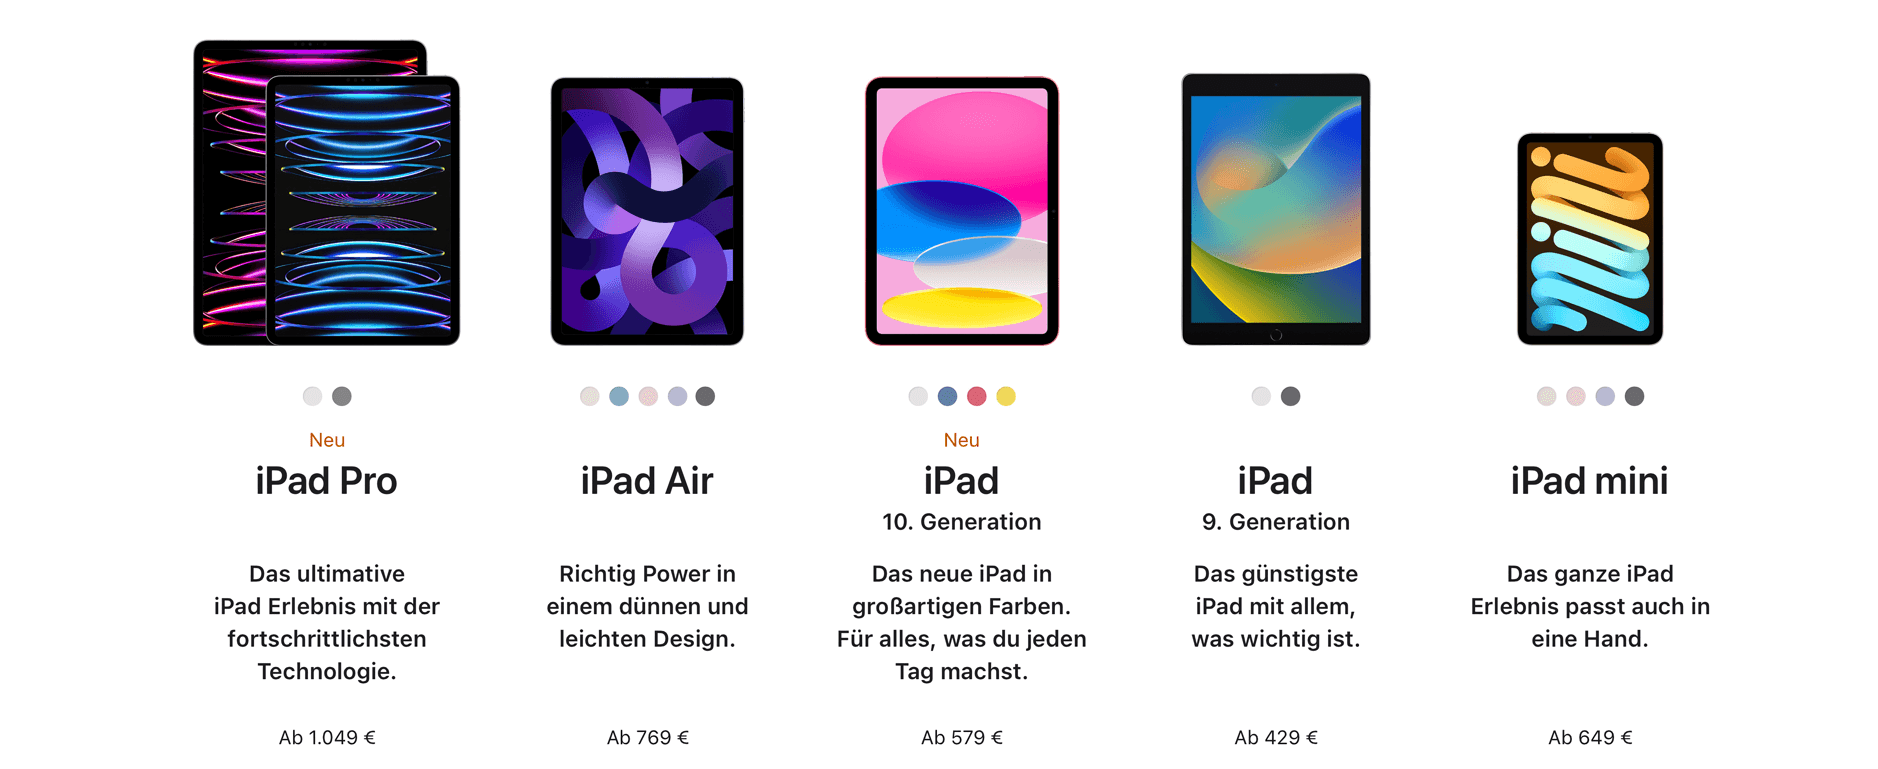 Bild zeigt alle iPad-Modelle.